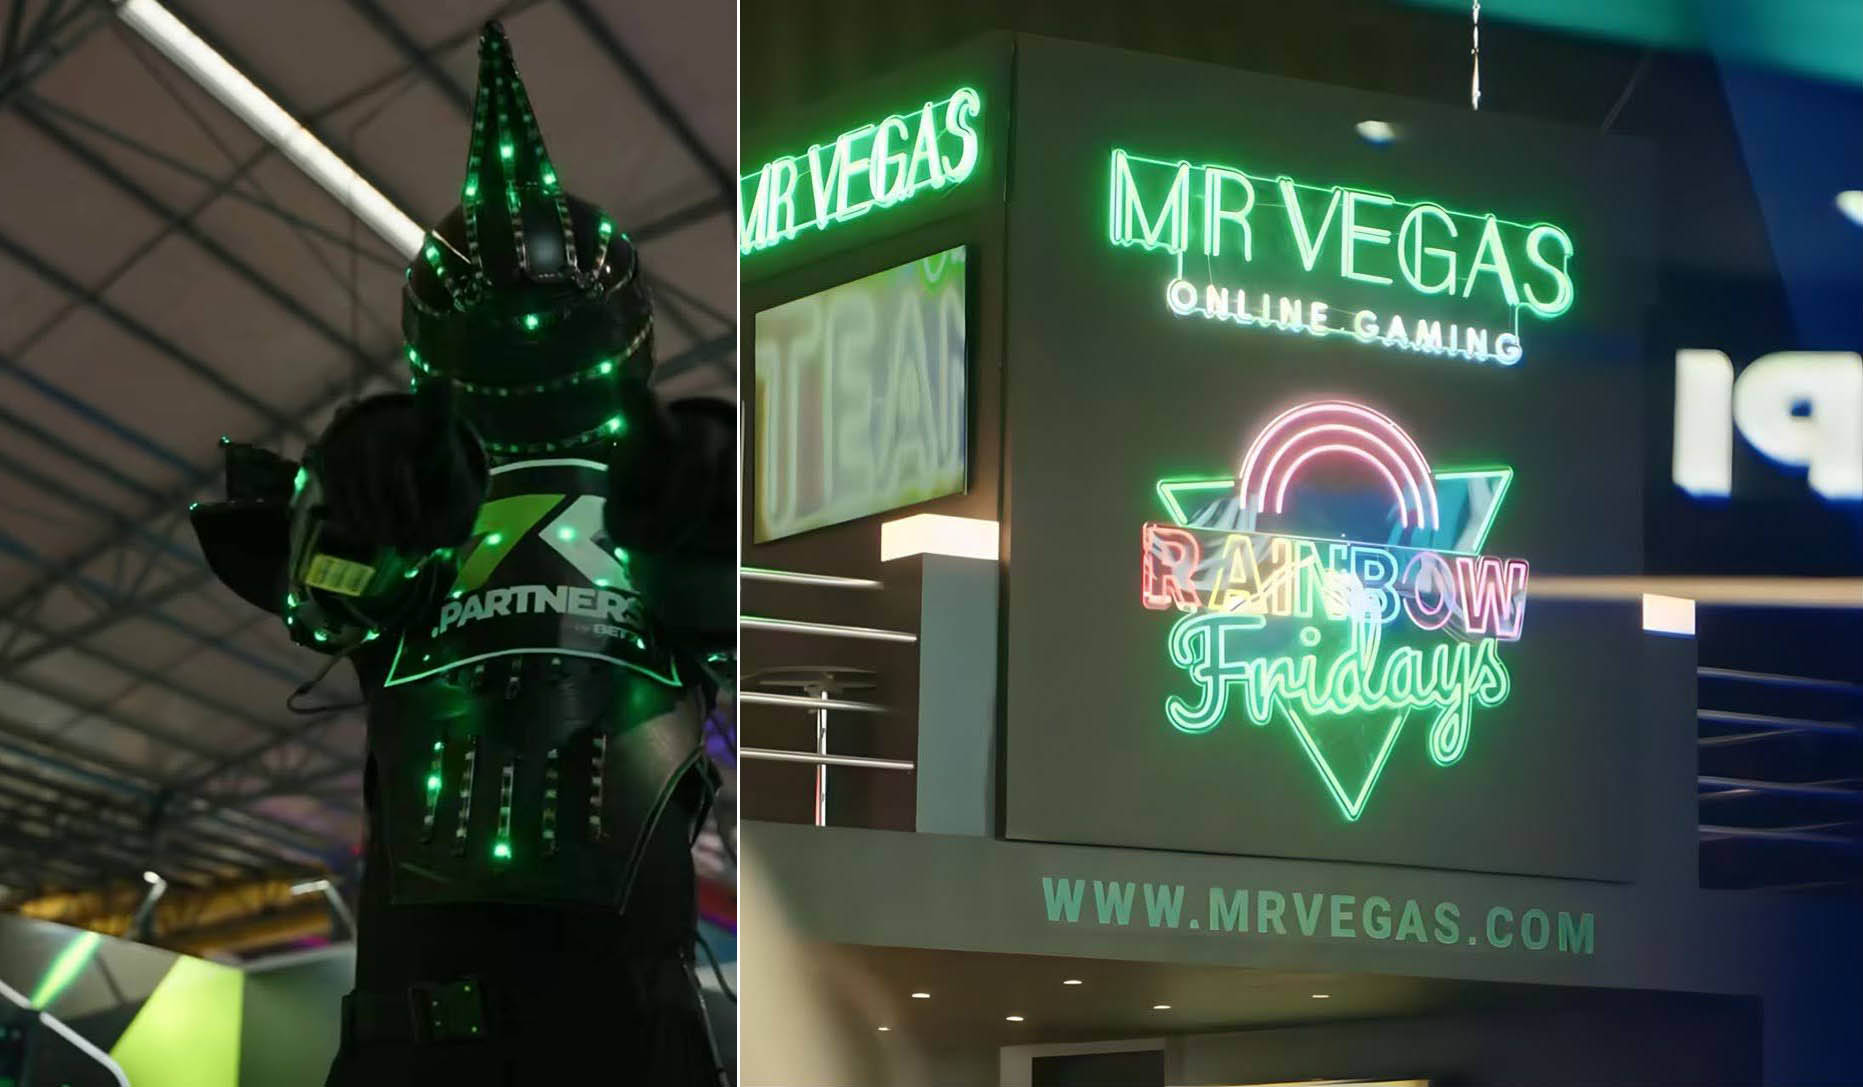 Mr Vegas Online Gaming